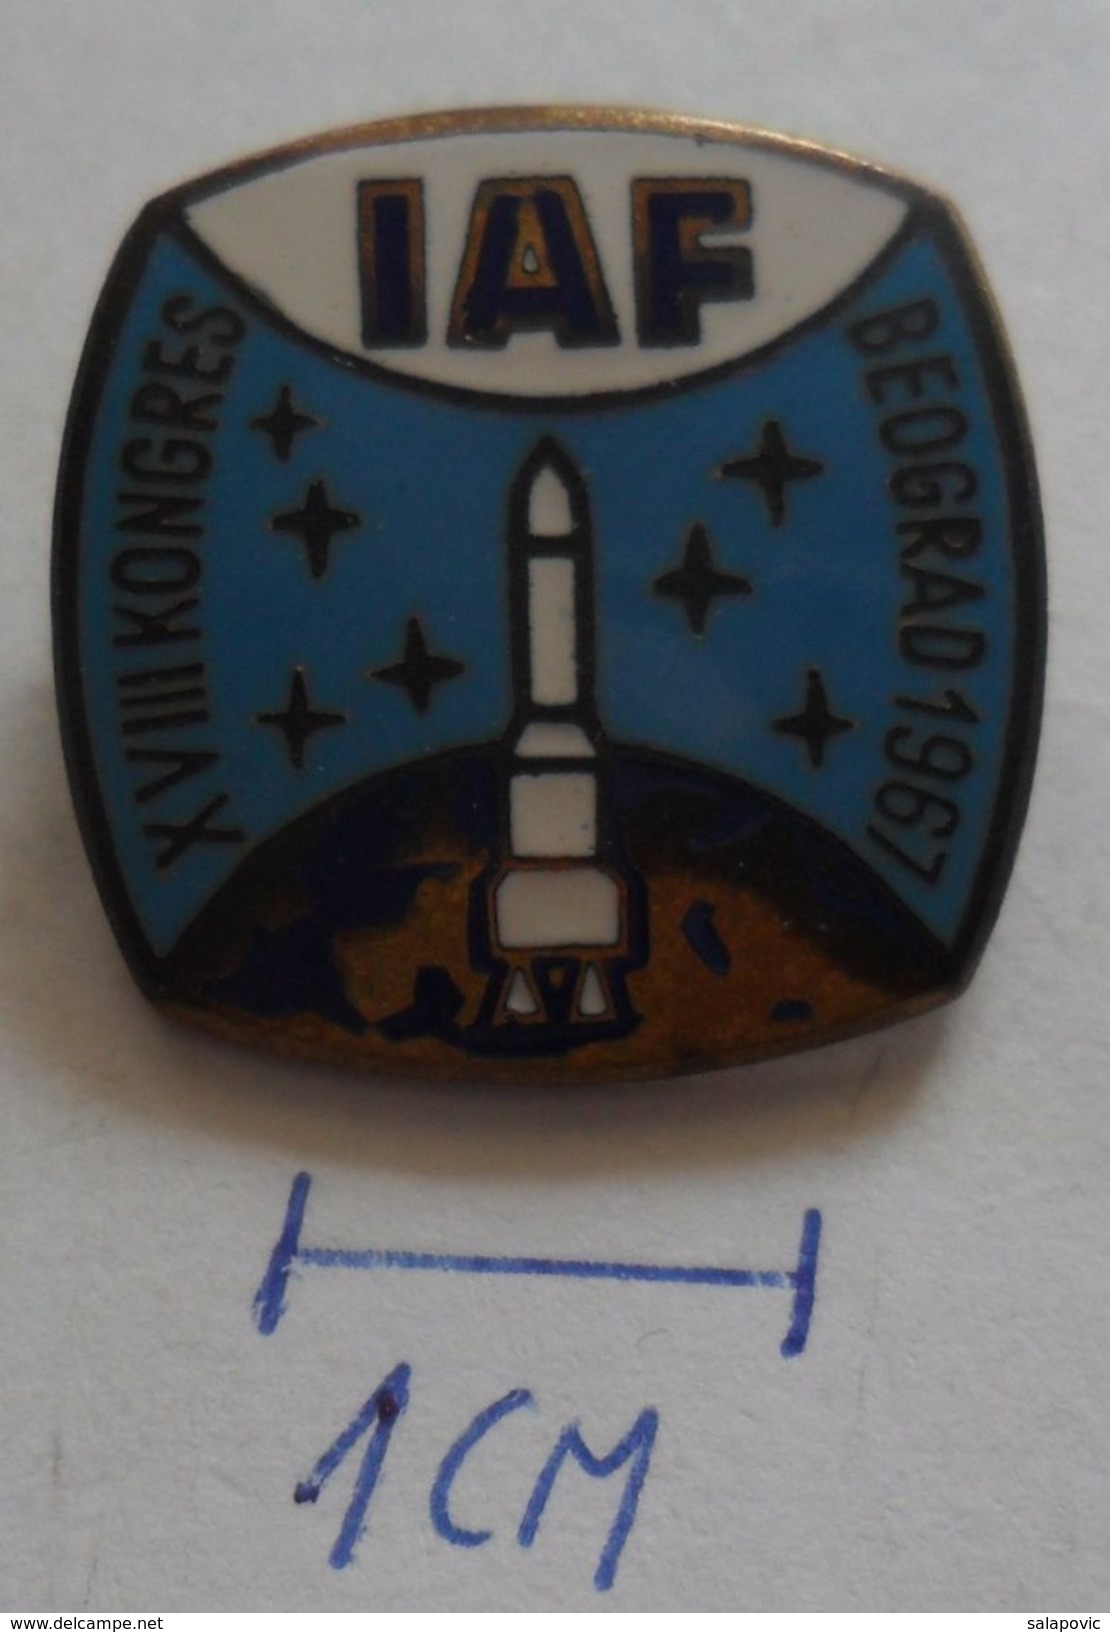 SPACE - IAF - International Astronautic Federation, Beograd, Year 1967  PINS BADGES Z3 - Raumfahrt